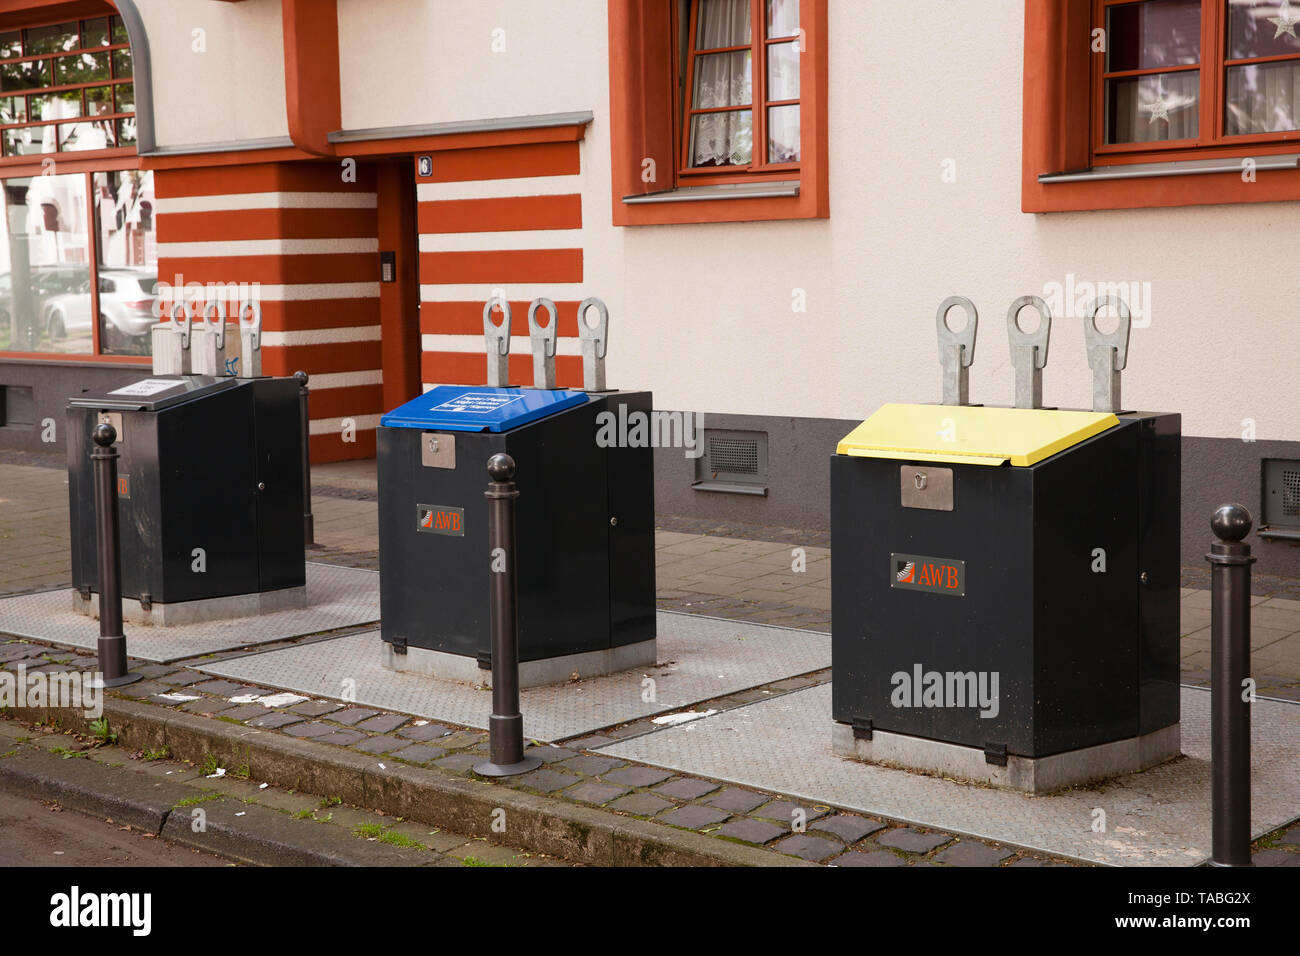 Tirar en contenedores de los residuos en el sistema de suelo radiante Naumann urbanización en el distrito Riehl, Colonia, Alemania. Des Unterf Einwurfbehaelter Foto de stock